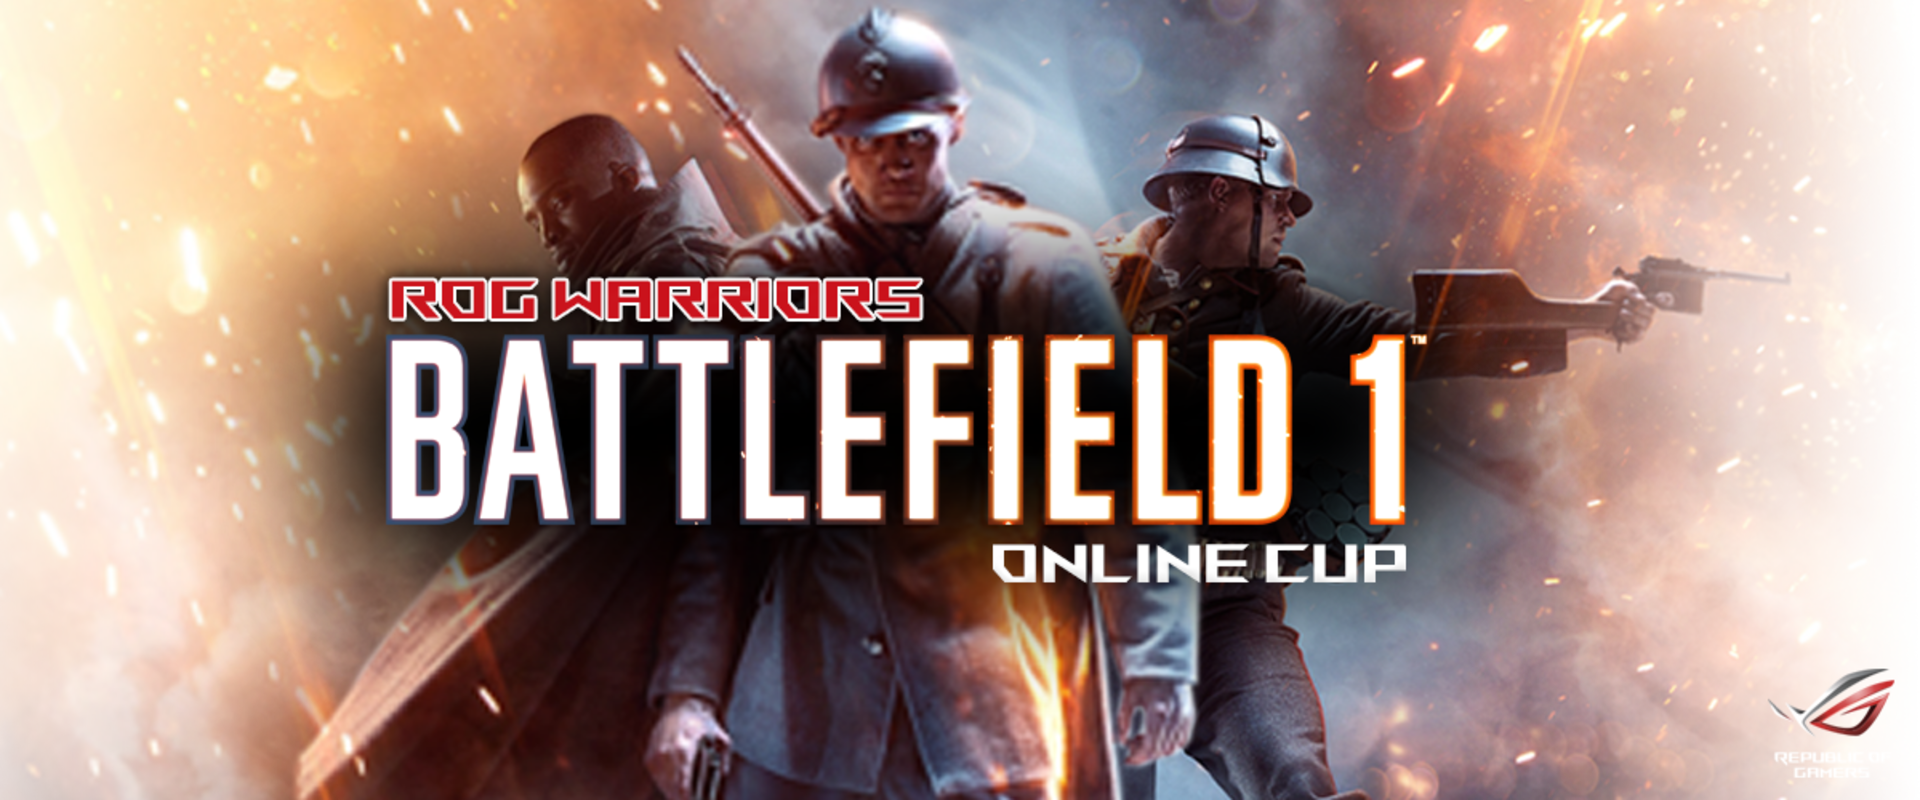 Megvan a 8 csapat az első magyar Battlefield 1 versenyre!